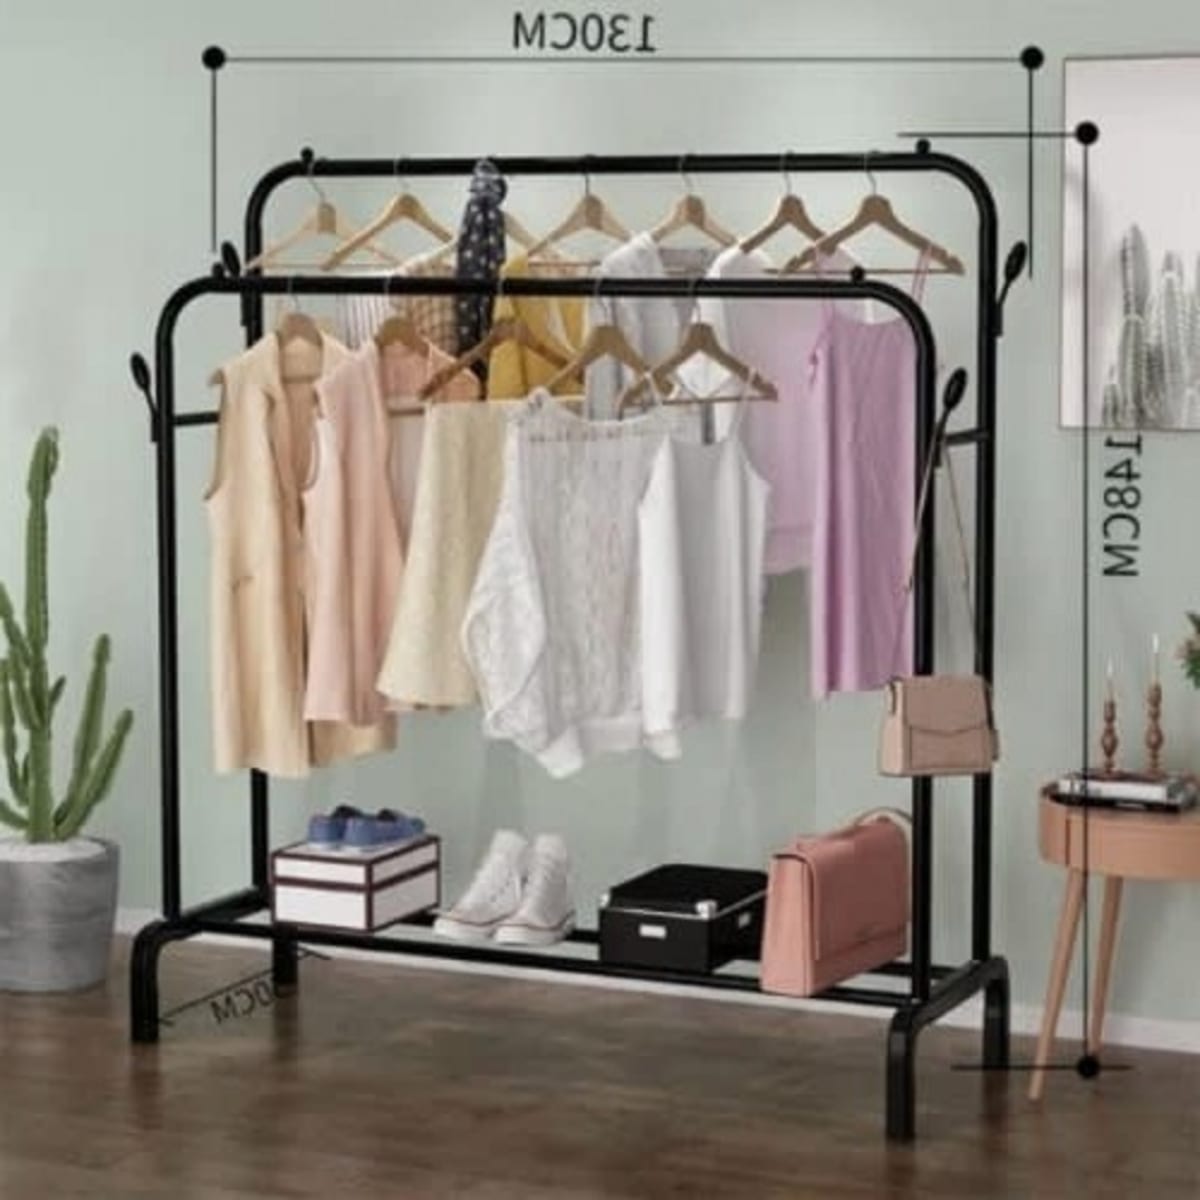 A&S Double Pole Clothes Hanger